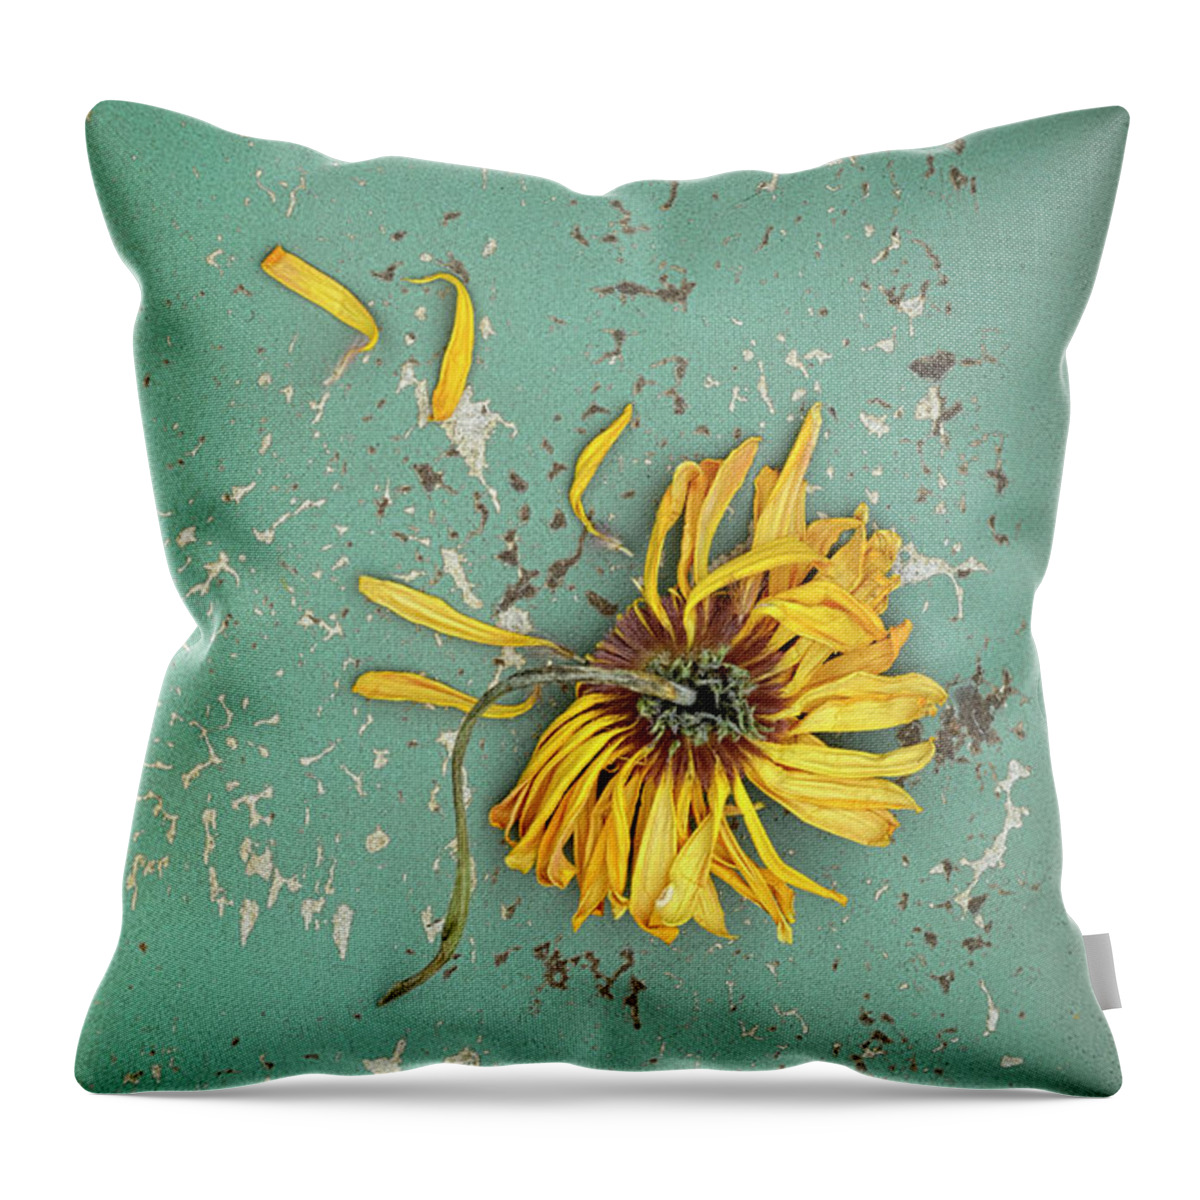 Flower Throw Pillow featuring the photograph Dead Suflower by Jill Battaglia